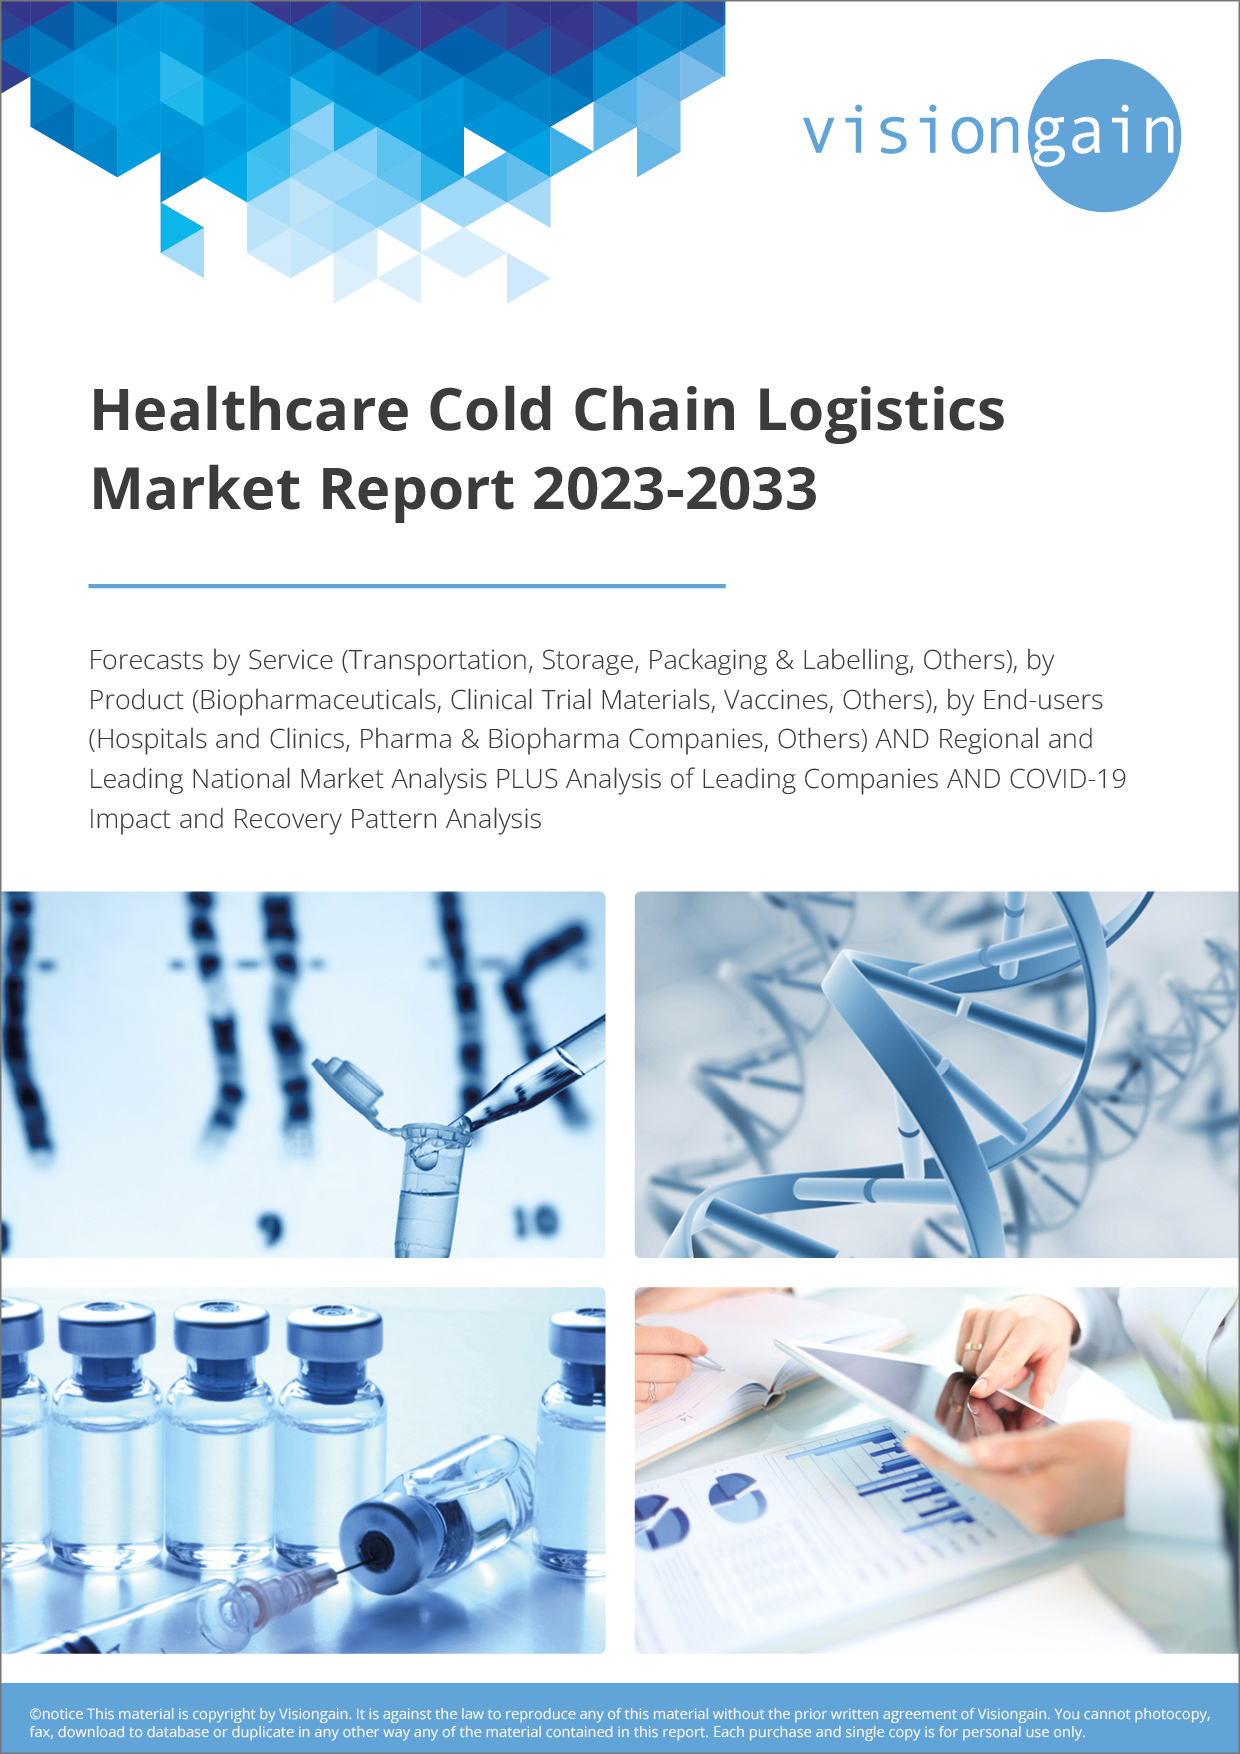 Healthcare Cold Chain Logistics Market Report 2023-2033